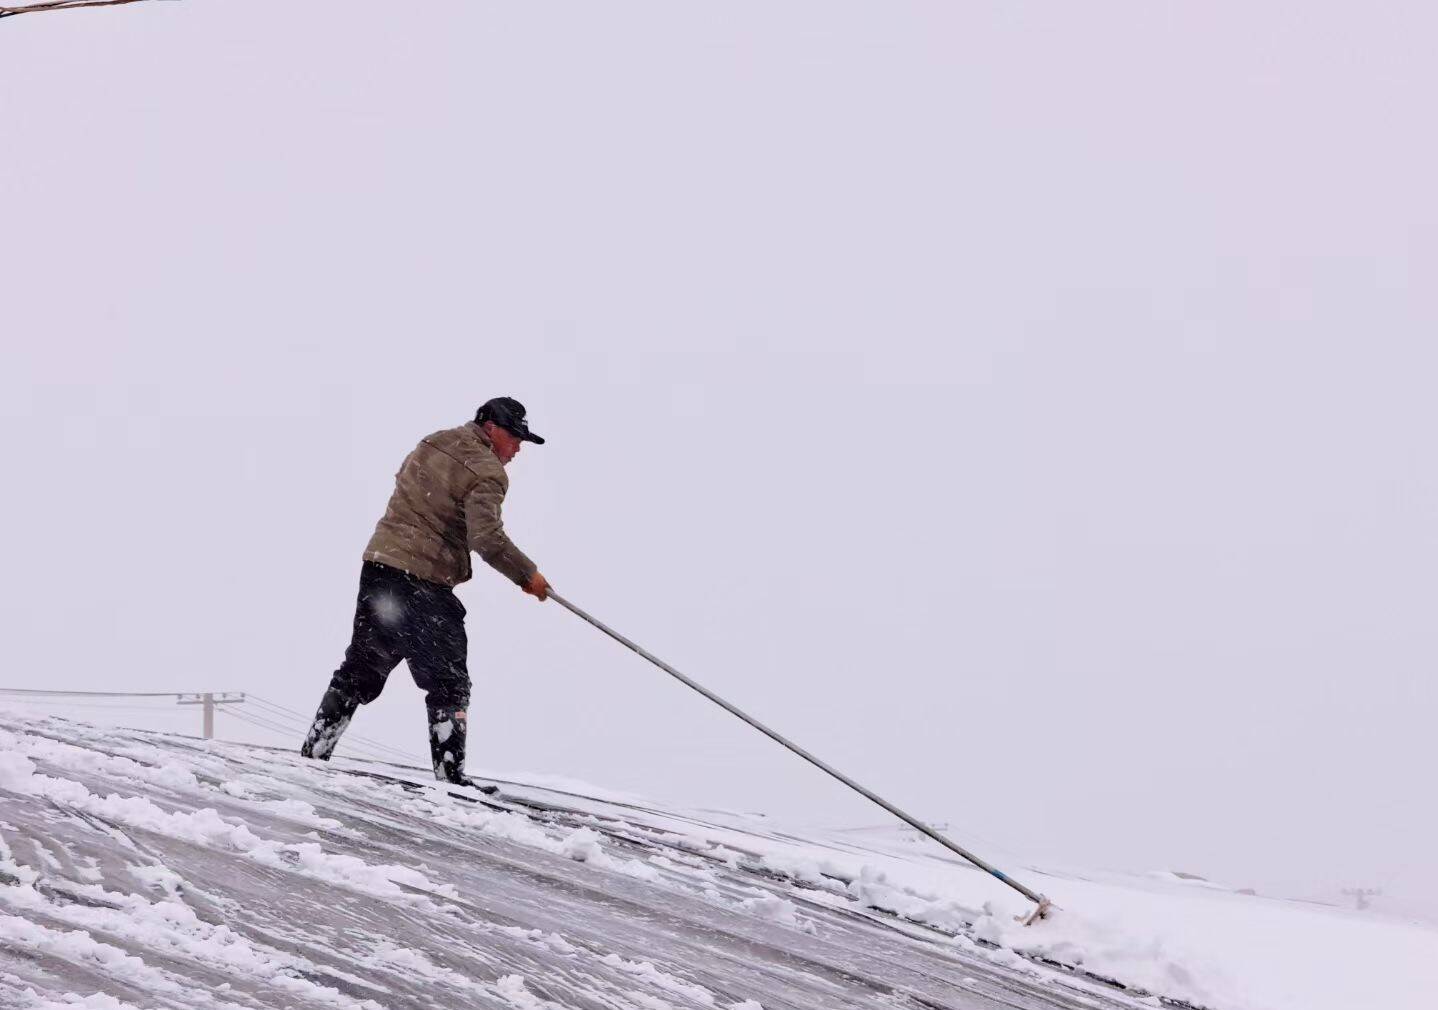 局部降雪超过10毫米！潍坊农技专家建议农户加强保温、及时清雪